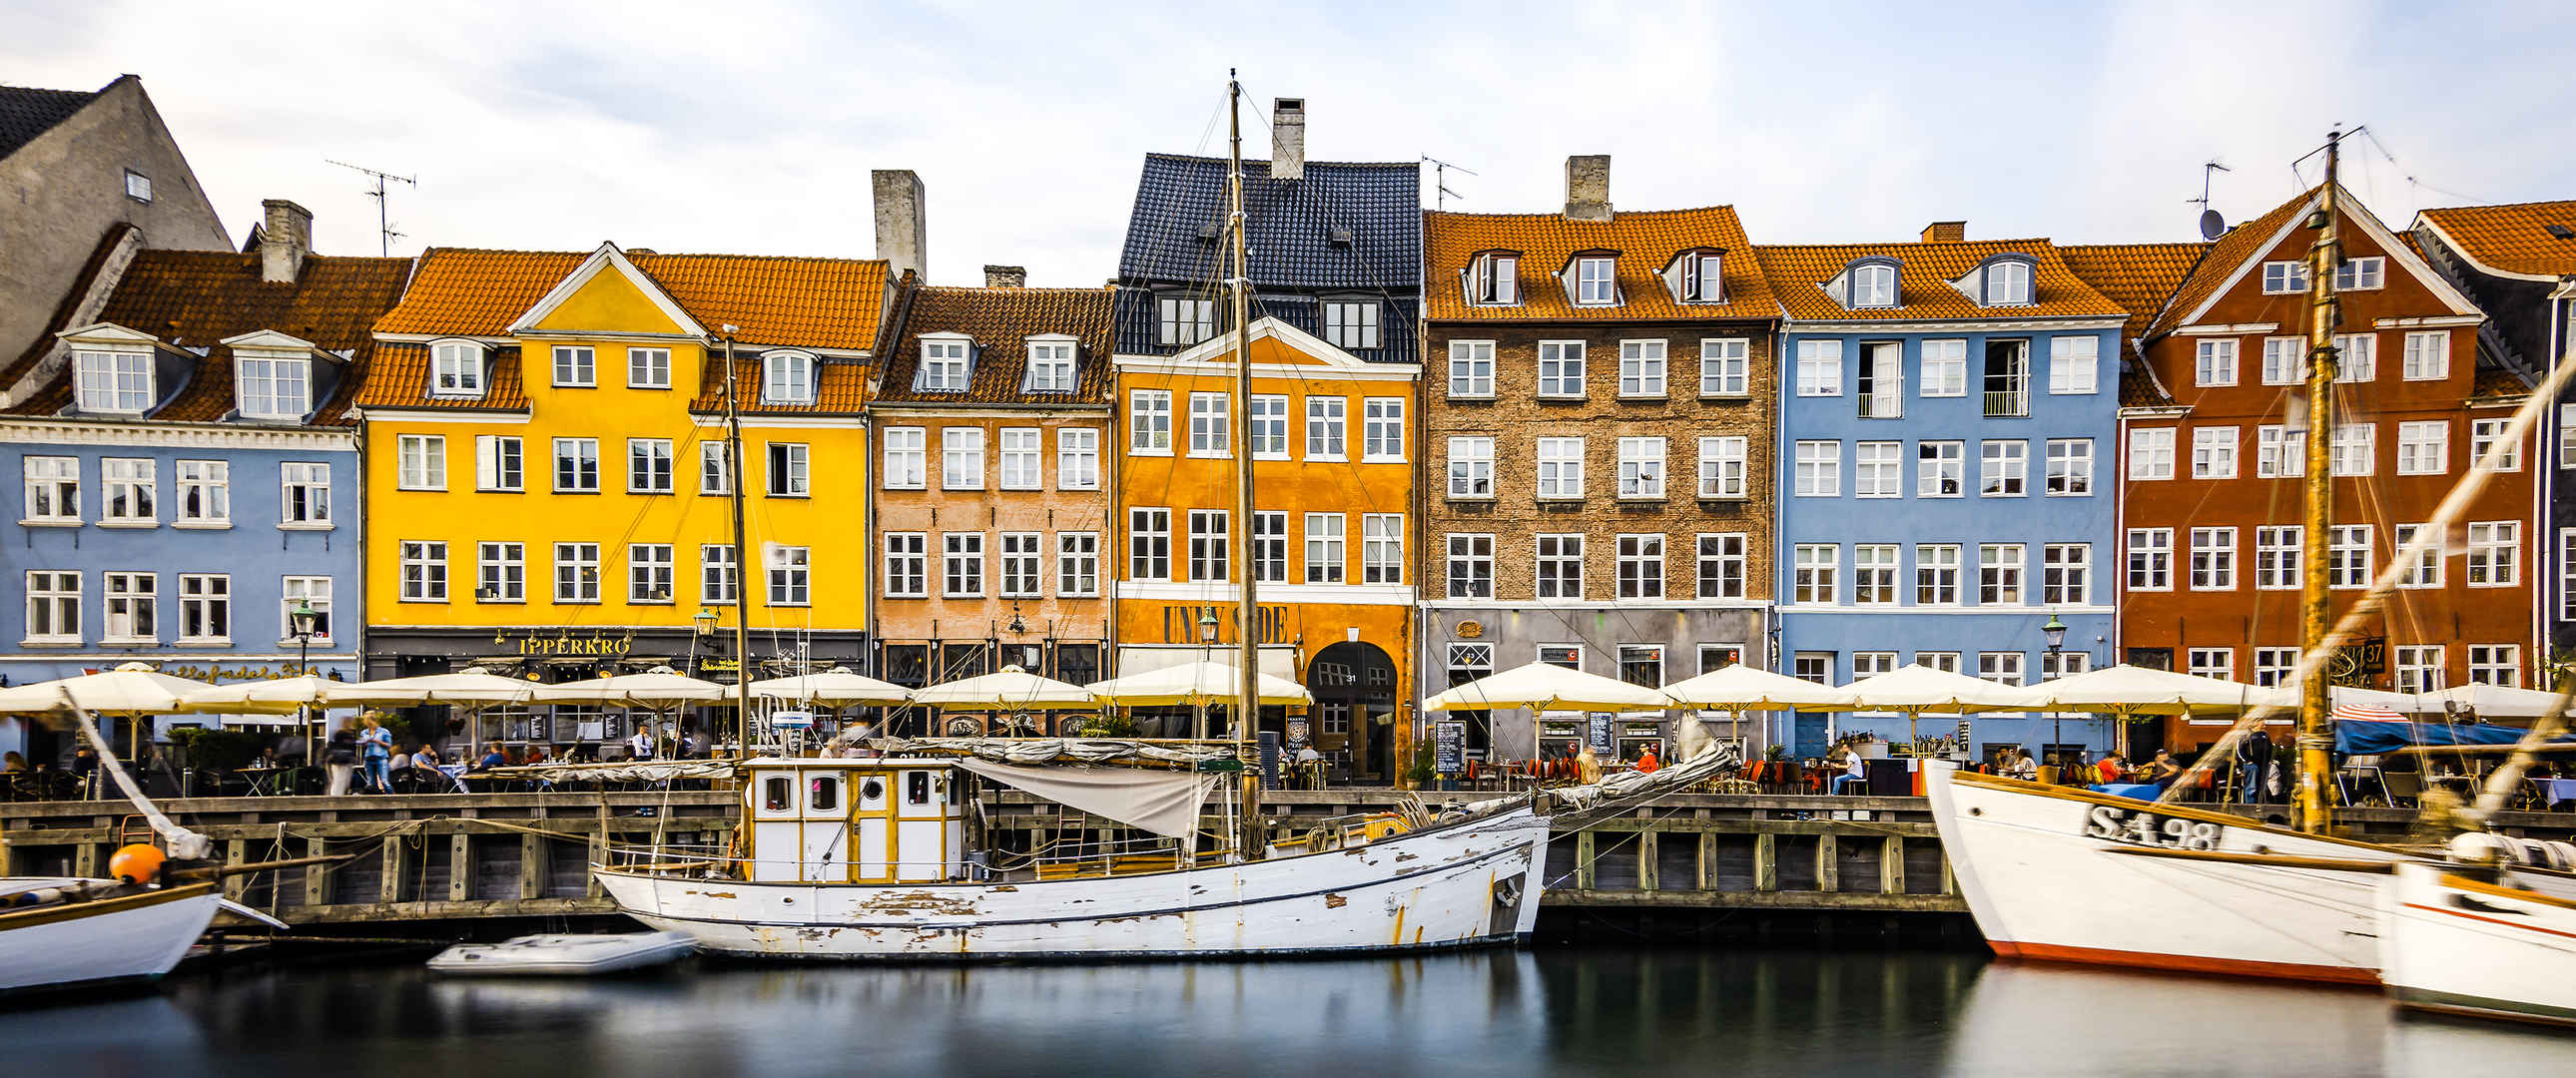 哥本哈根 新的港口3440x1440风景壁纸-